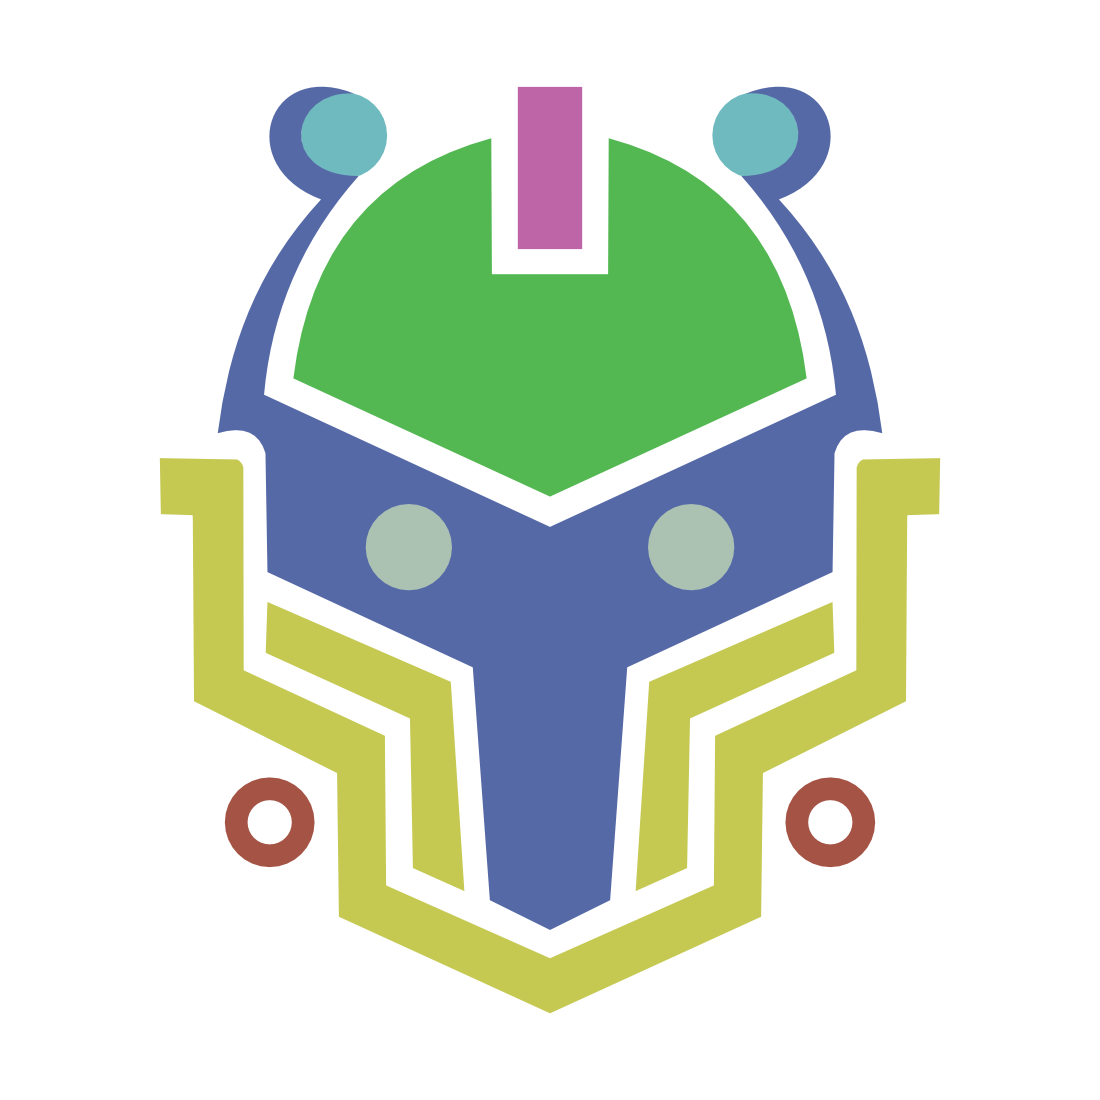 Robot Logo preview image.